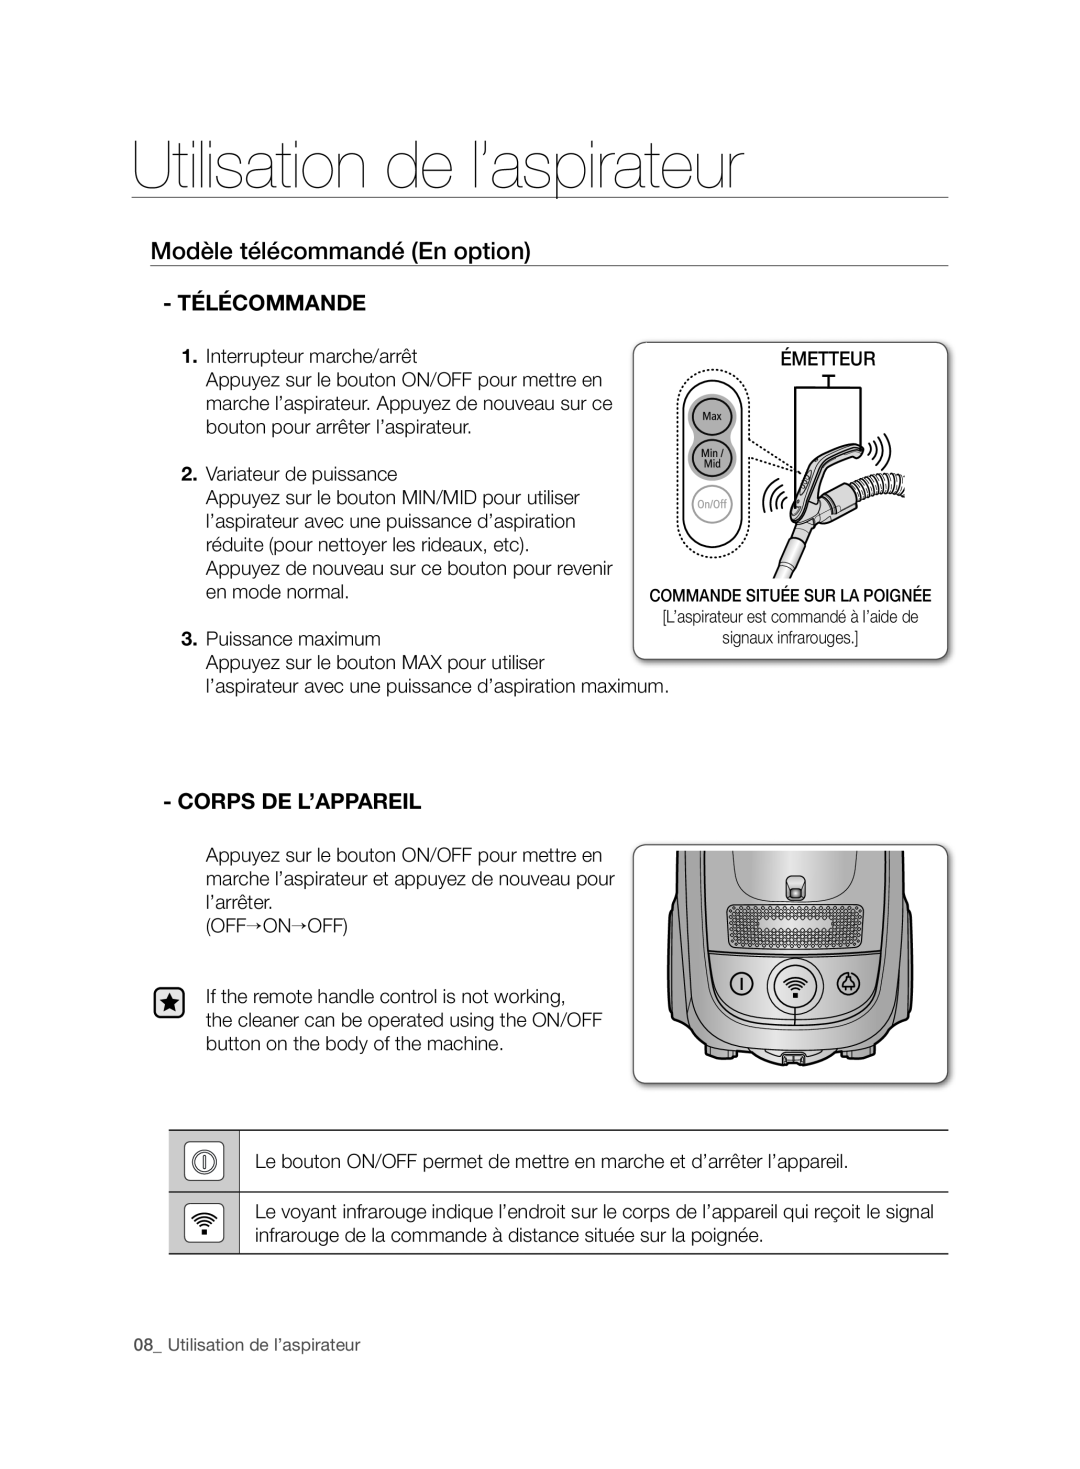 Samsung VCC7480V3R/XEH manual Modèle télécommandé En option, télécommande, Utilisation de l’aspirateur, Corps De L’Appareil 